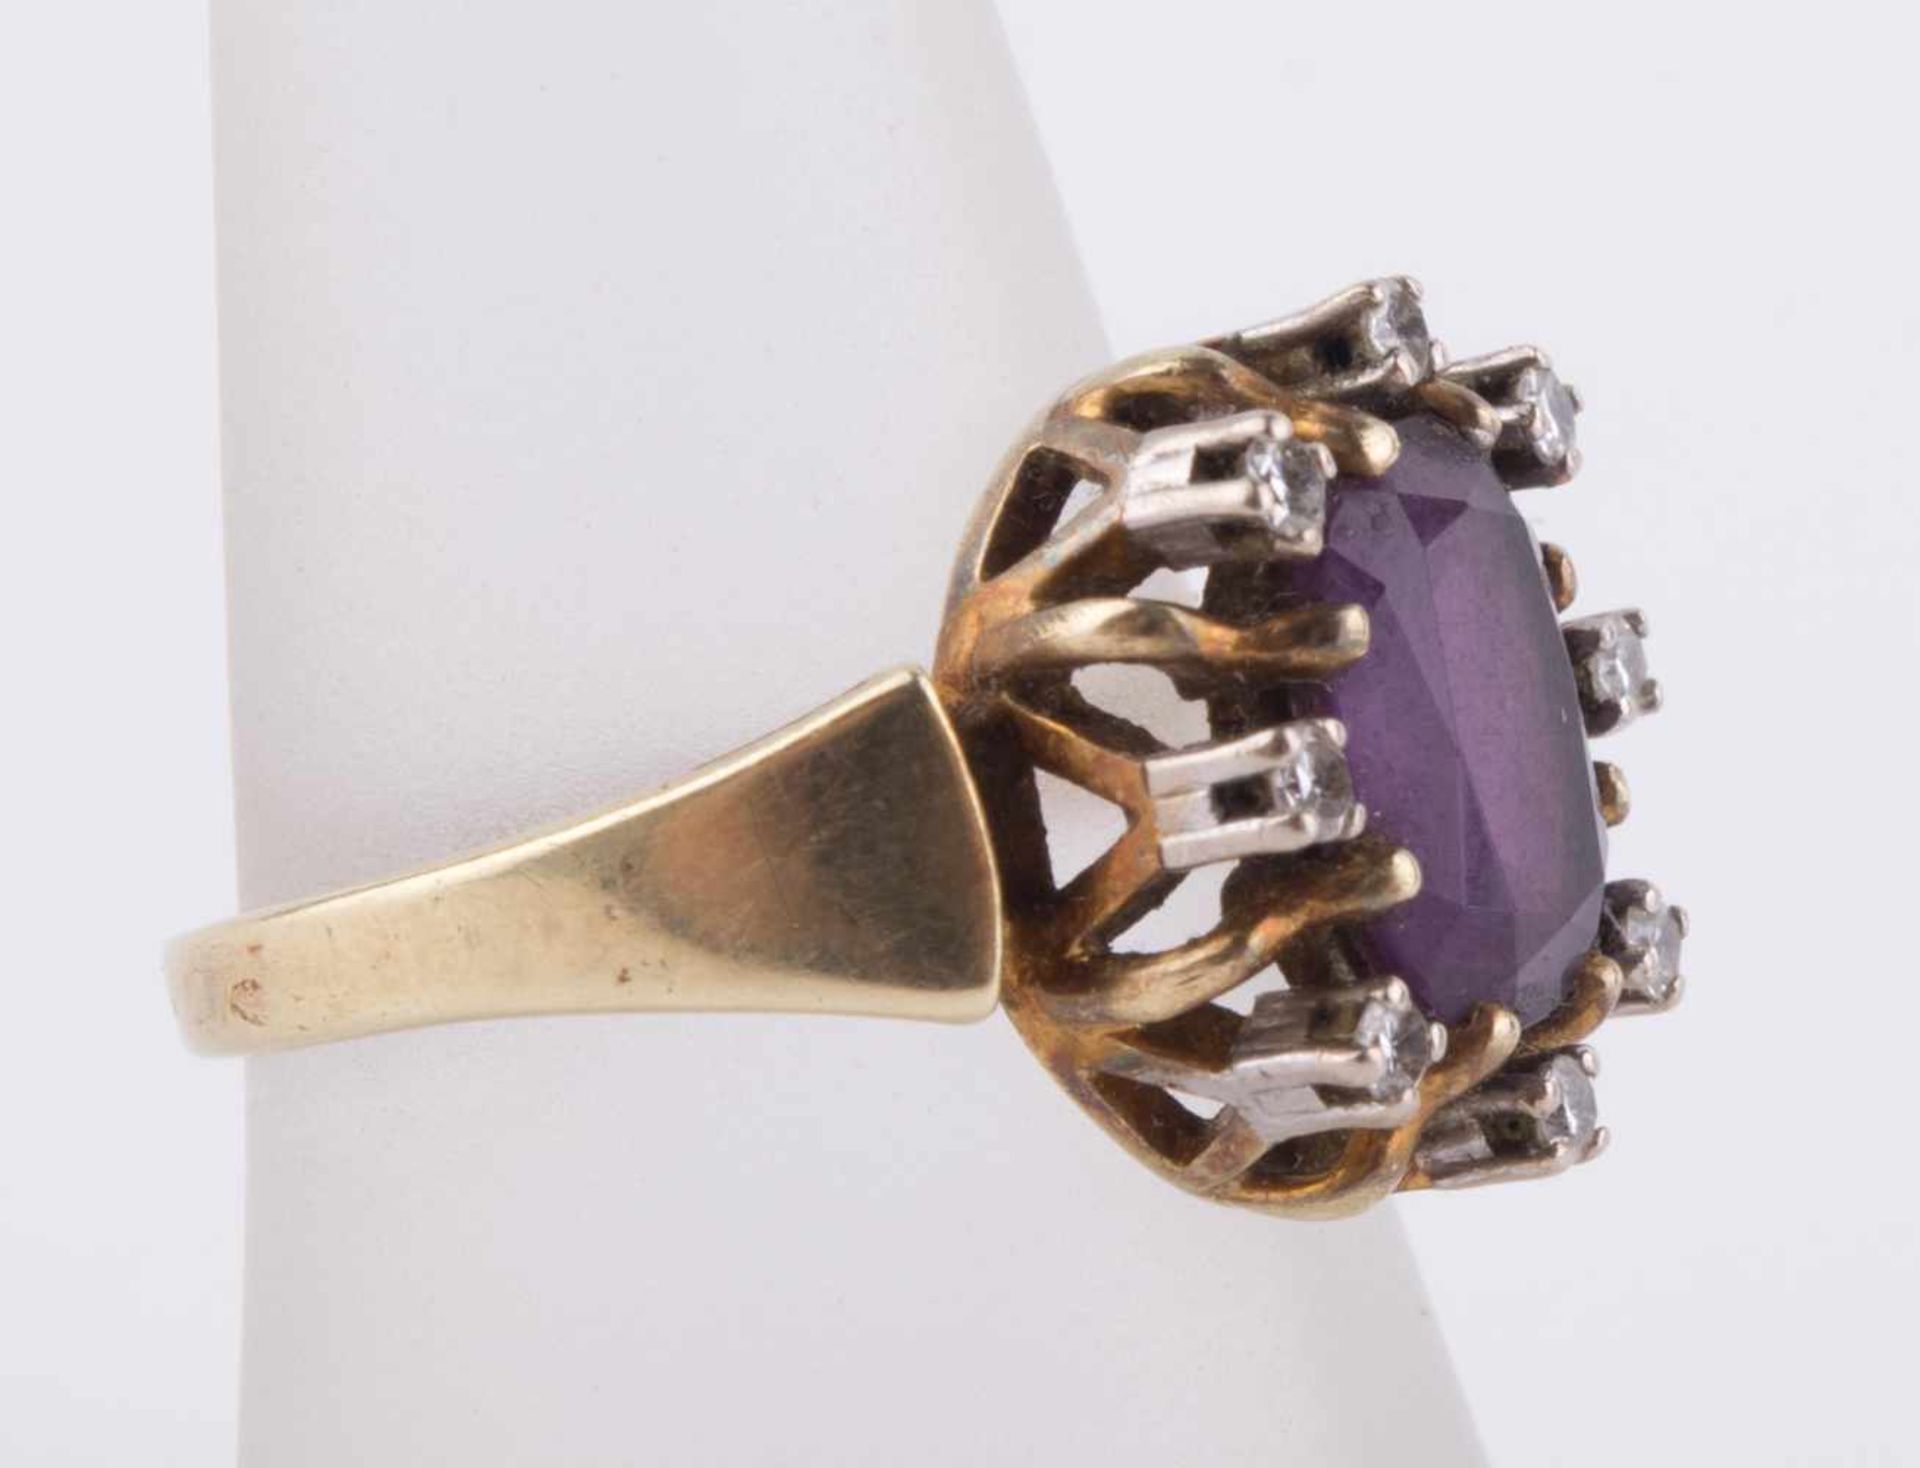 Damen Amethyst-Diamantring / Women's amethyst-diamond gold ring GG 585/000, RG ca. 58, 8 kleine - Bild 4 aus 10